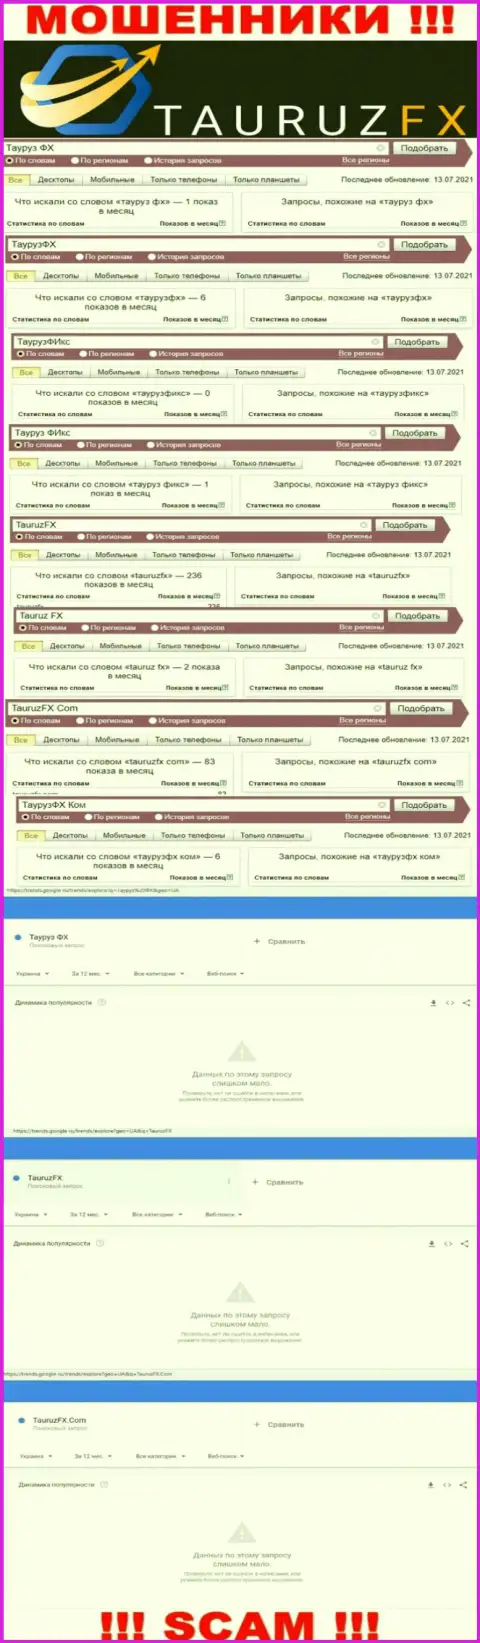 Анализ онлайн запросов по мошенникам ТаурузФХ в интернет сети